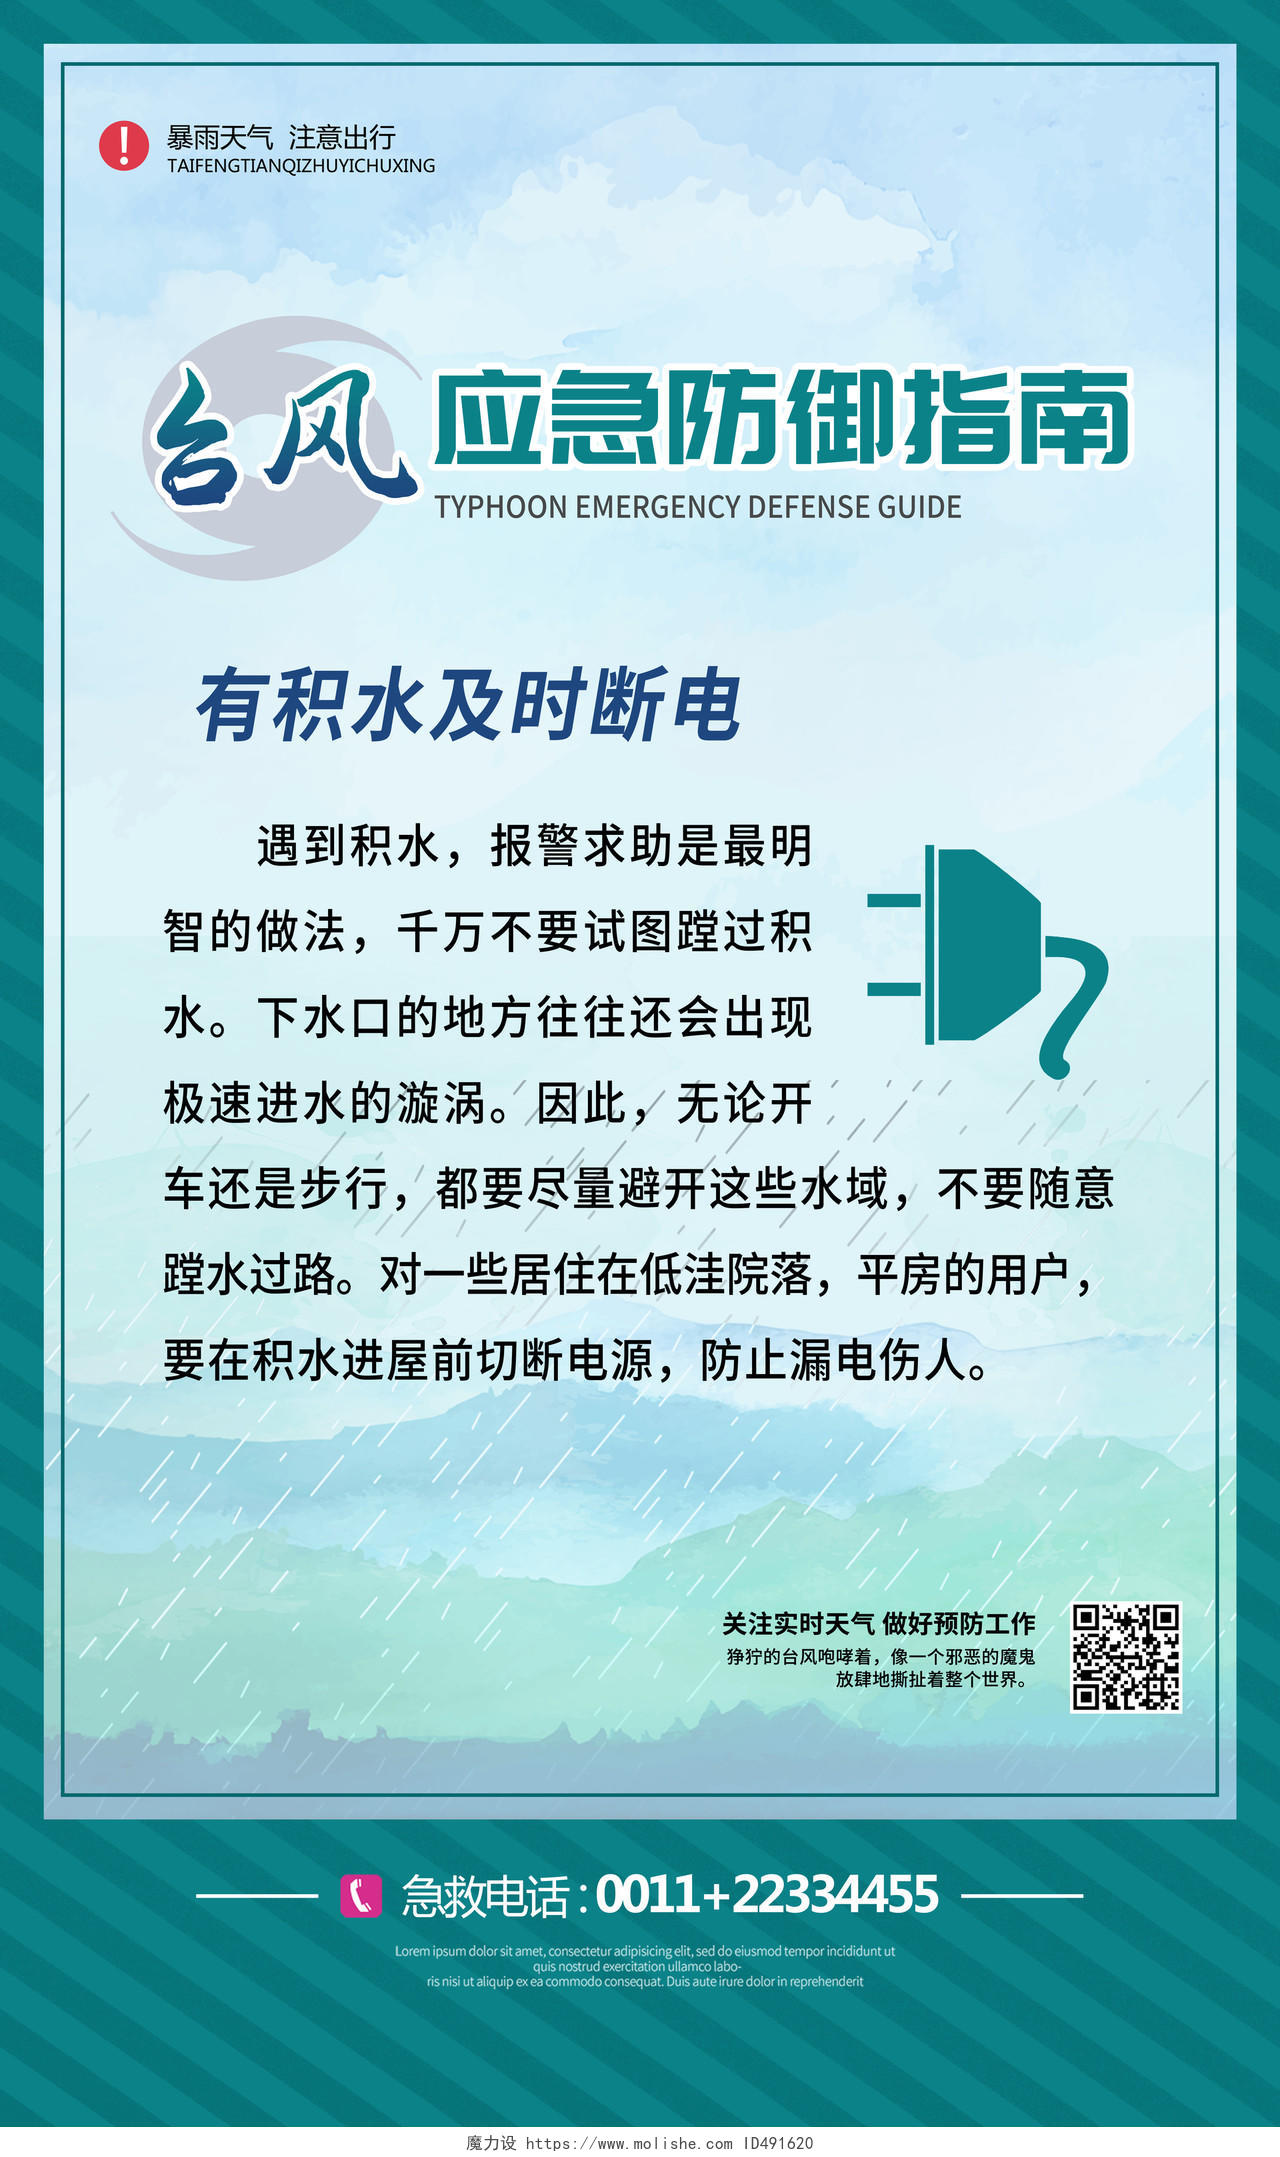 蓝色简约台风天气应急防御指南套图郑州水灾